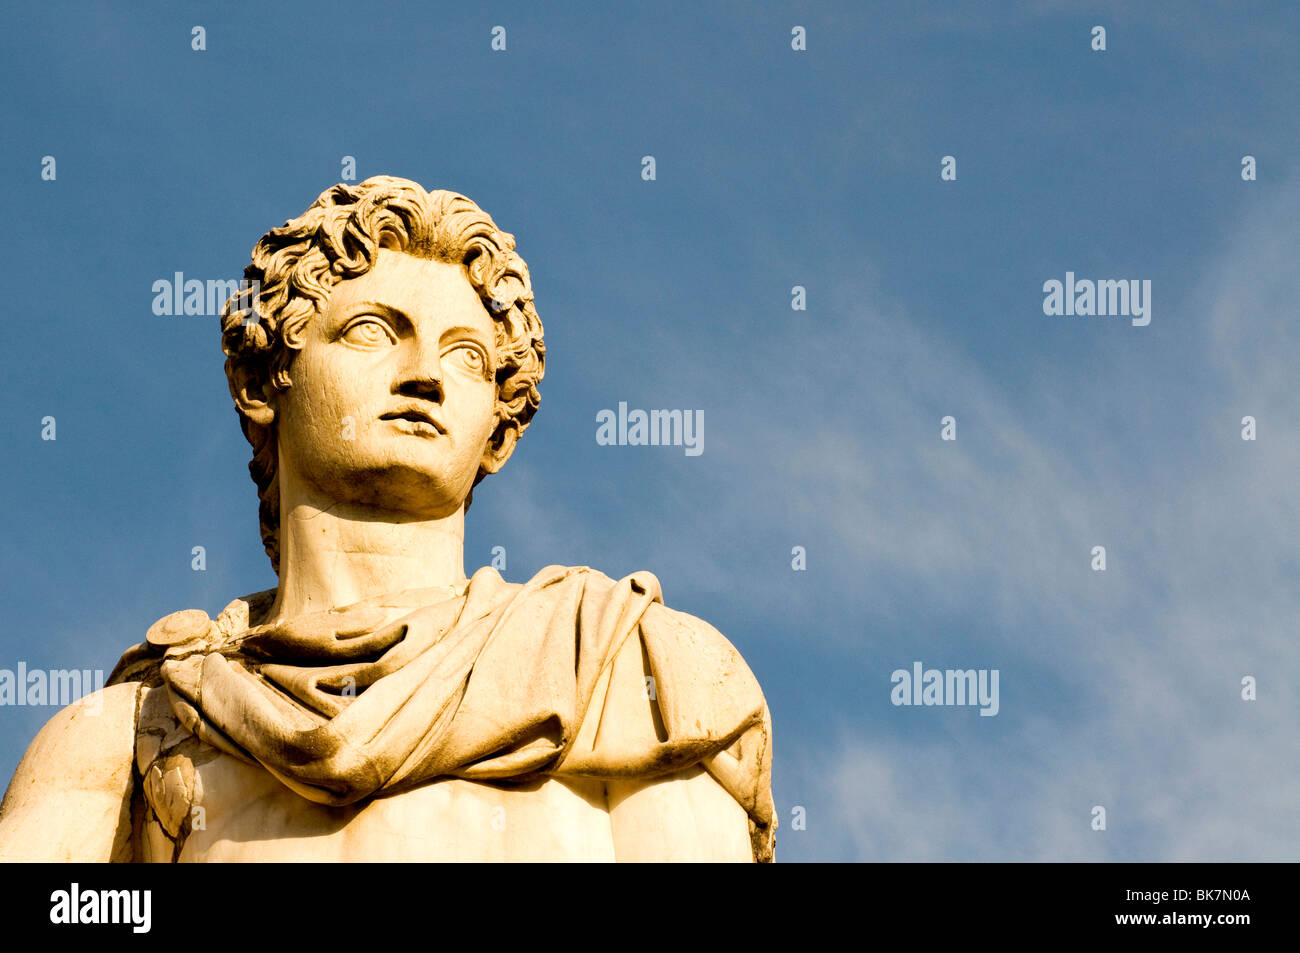 Dettaglio di una statua romana del Campidoglio, Roma Italia Foto Stock